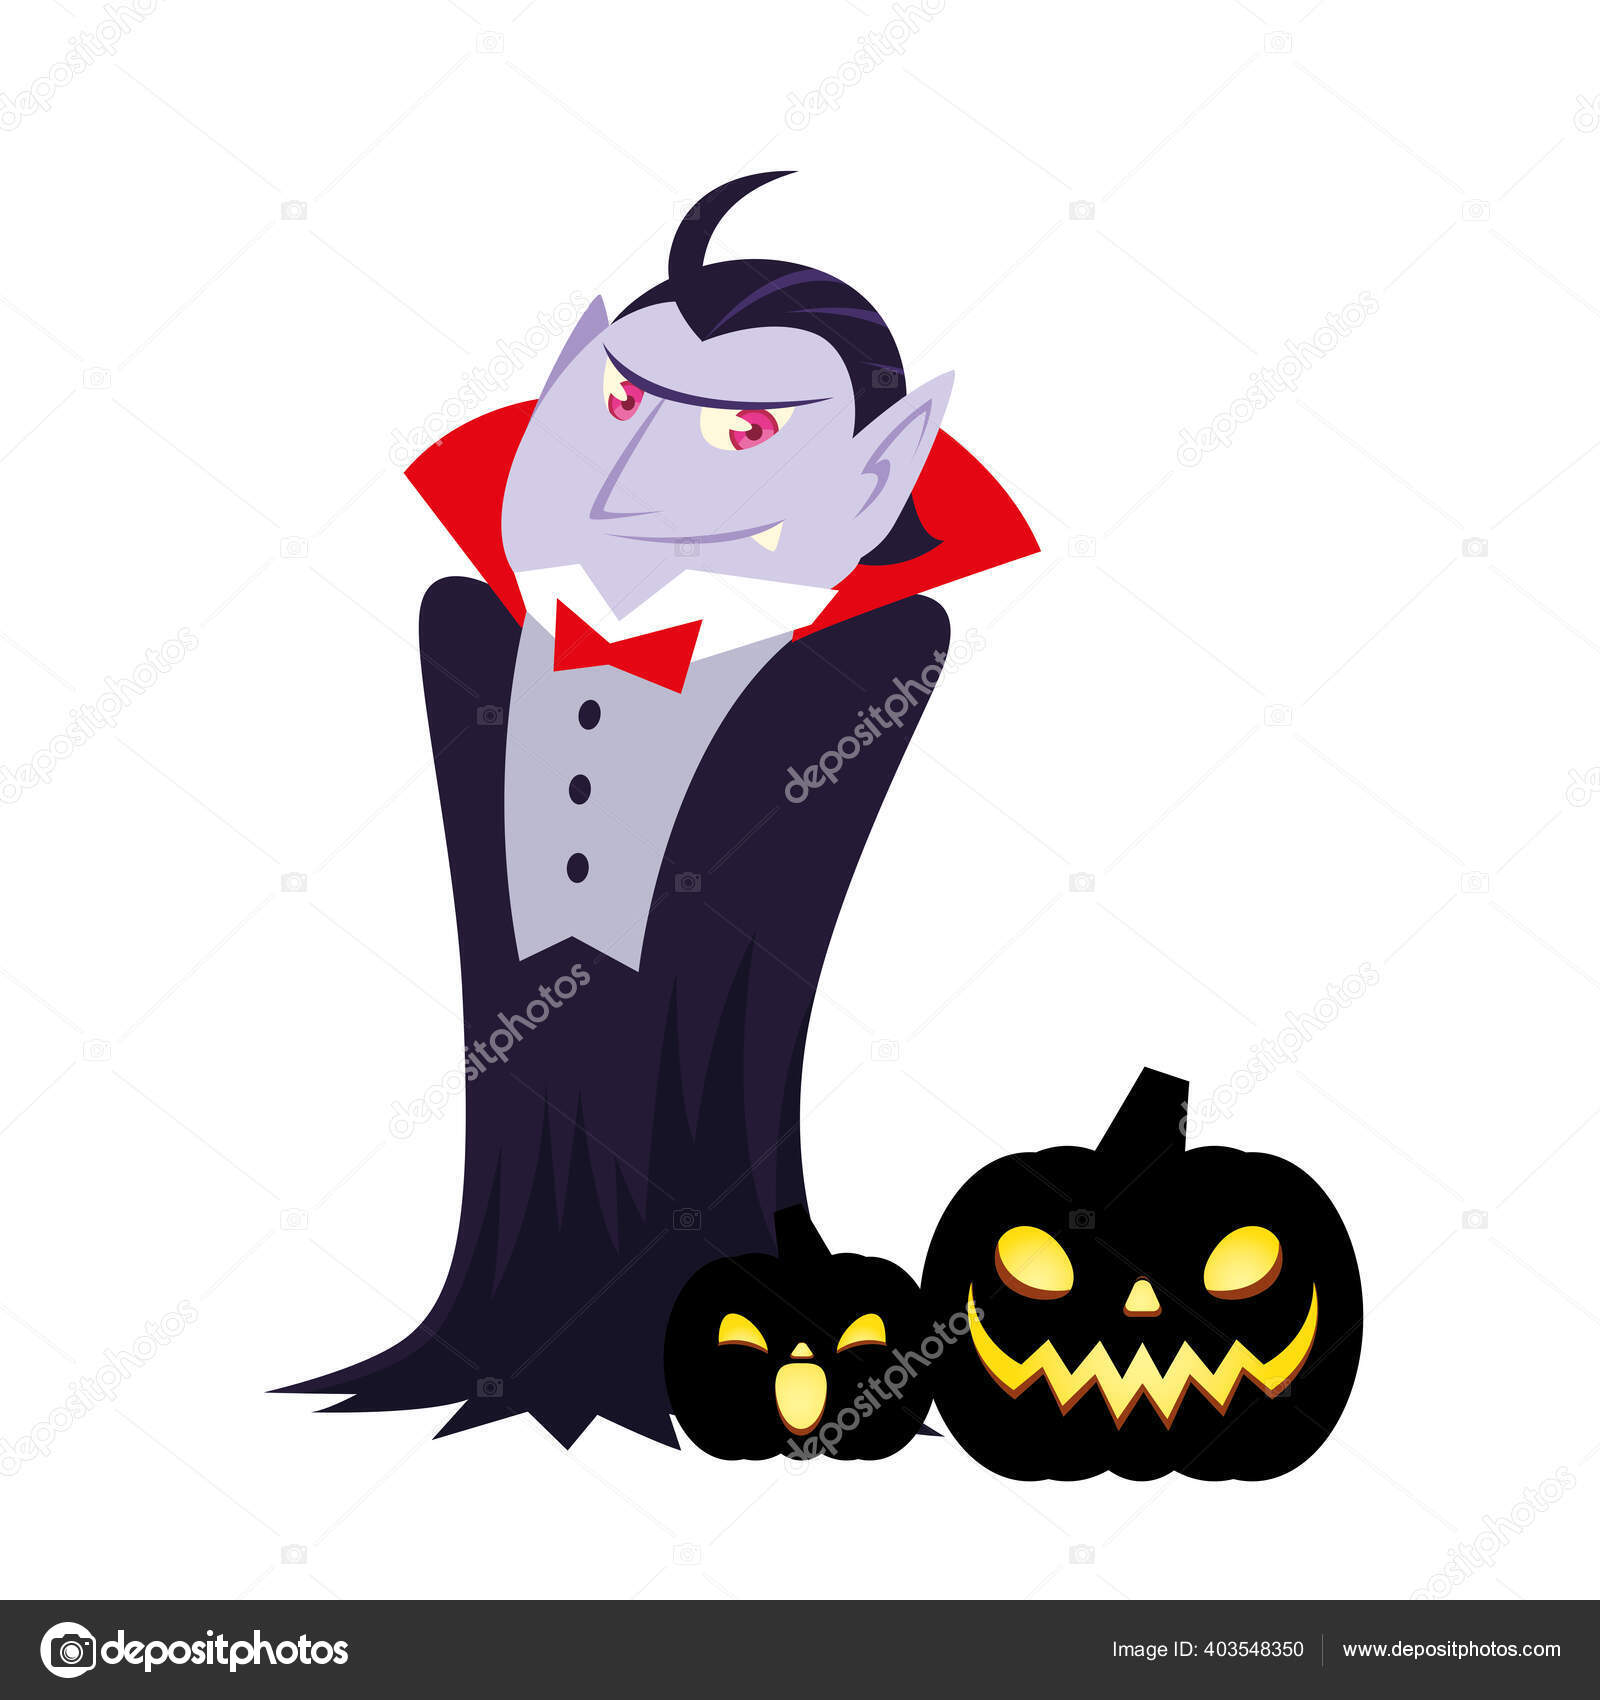 Halloween Vampire Cartoon With Pumkins Vector Design Vector Image By C Djv Vector Stock